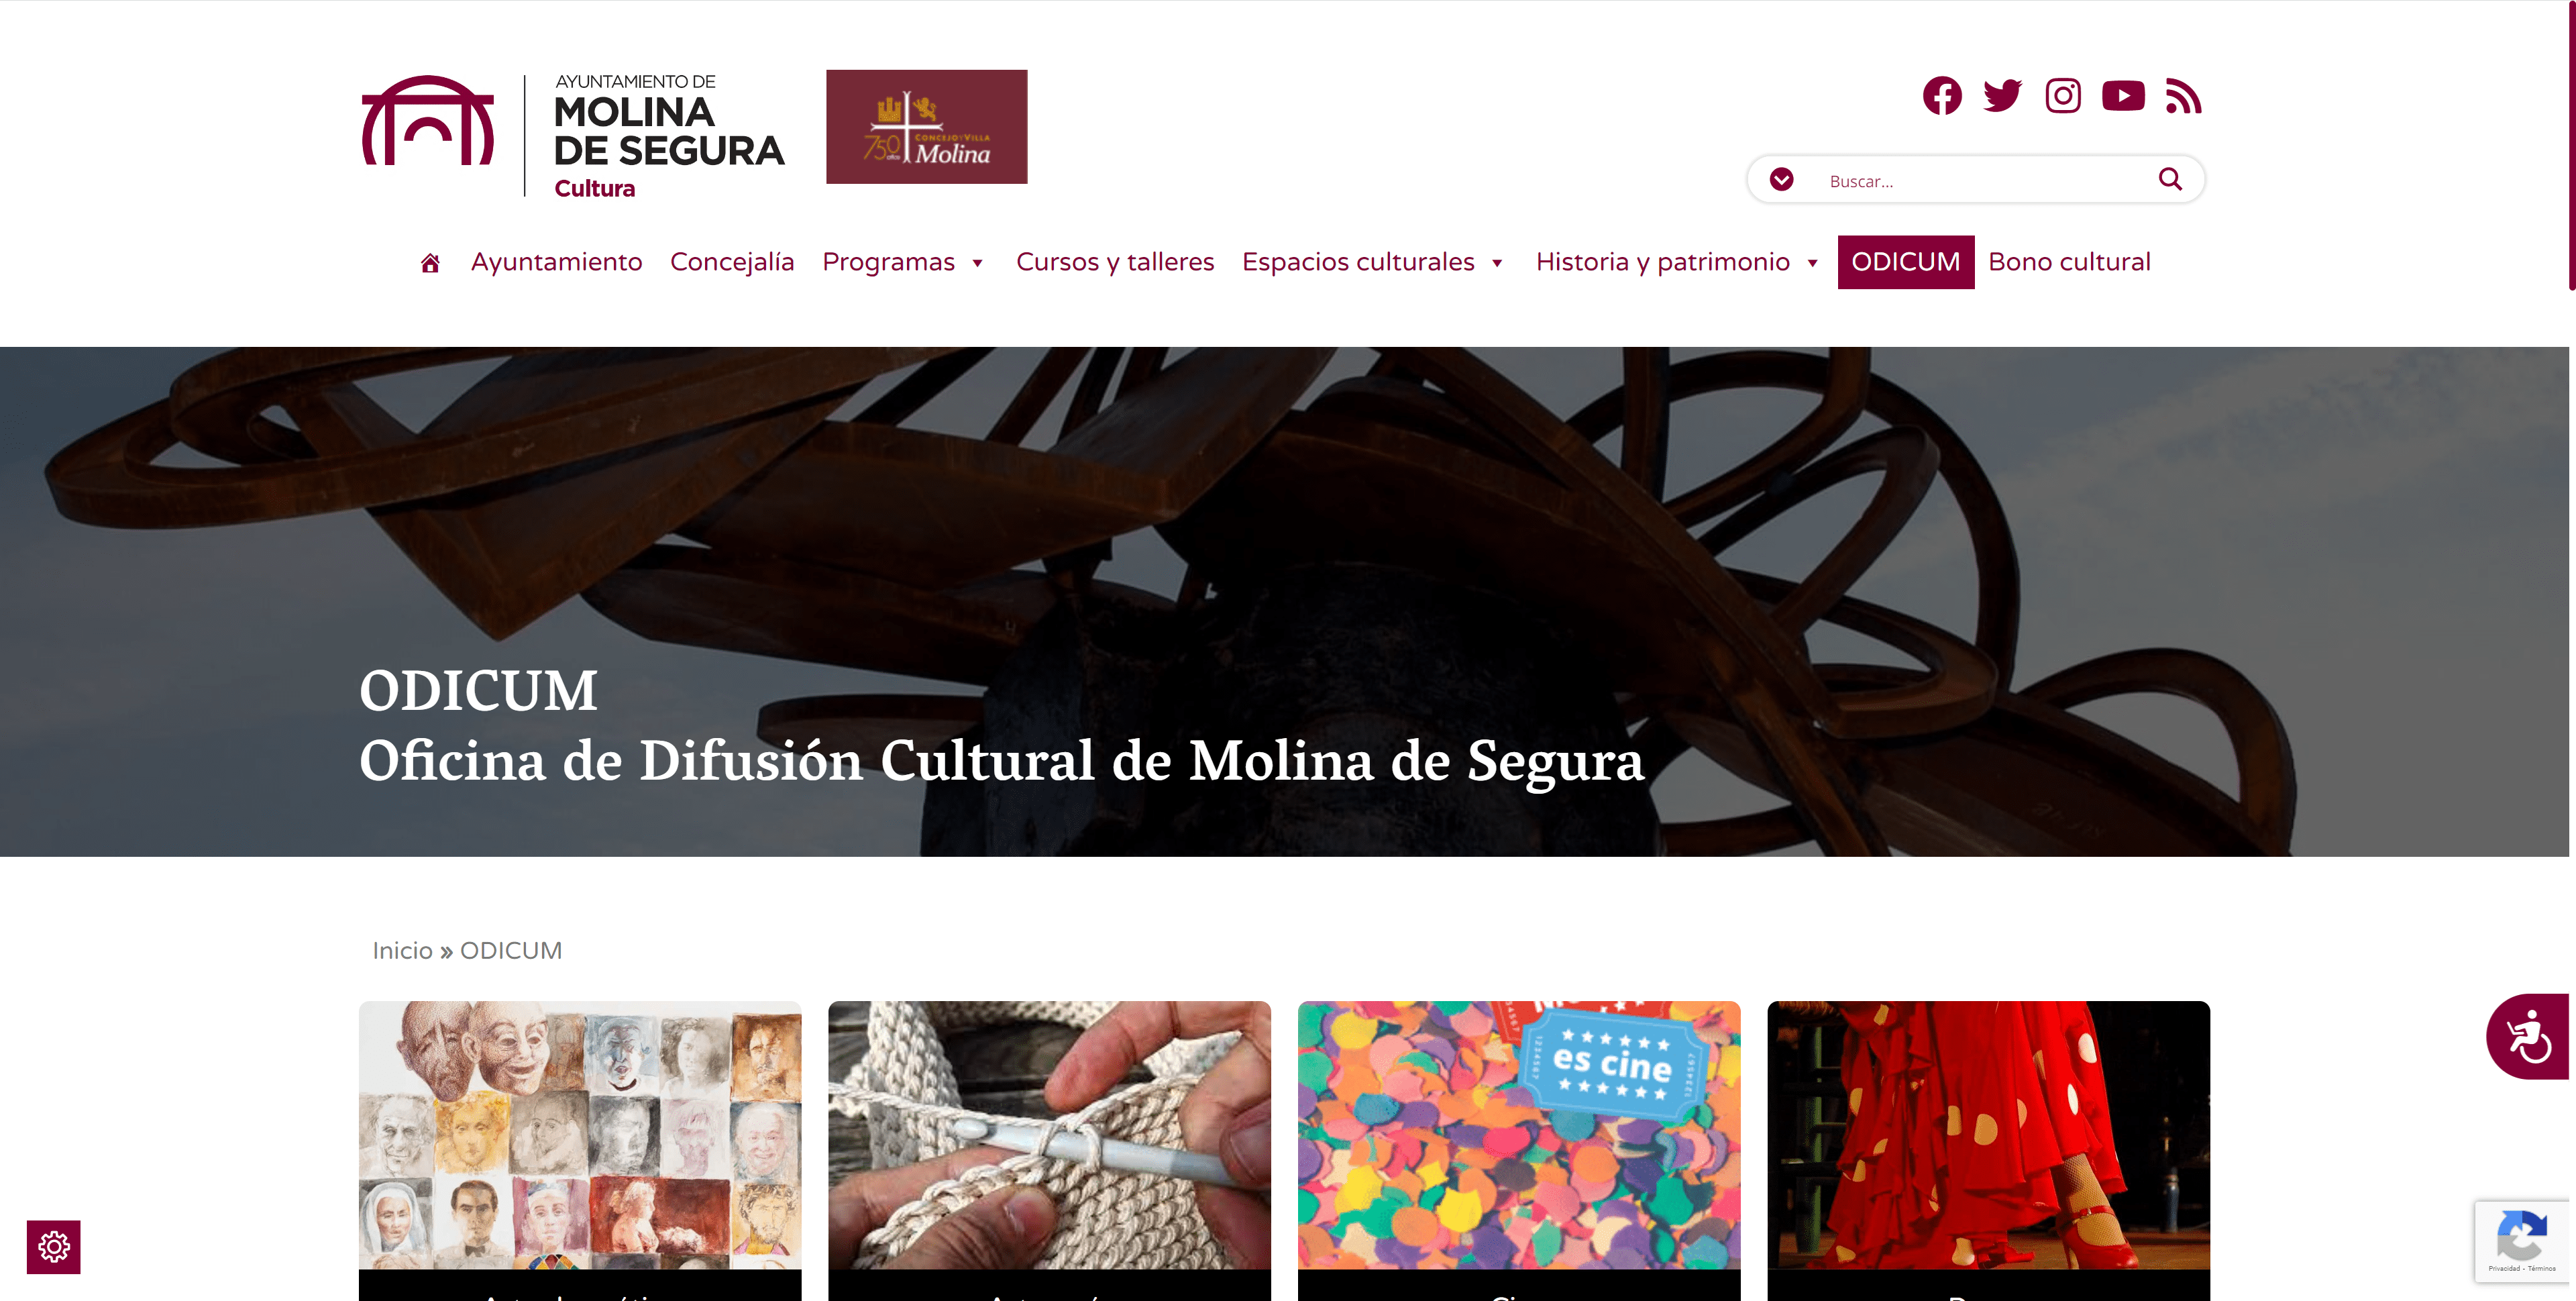 MOLINA DE SEGURA | El Ayuntamiento de Molina de Segura pone en marcha ODICUM, la nueva Oficina de Difusión Cultural del municipio